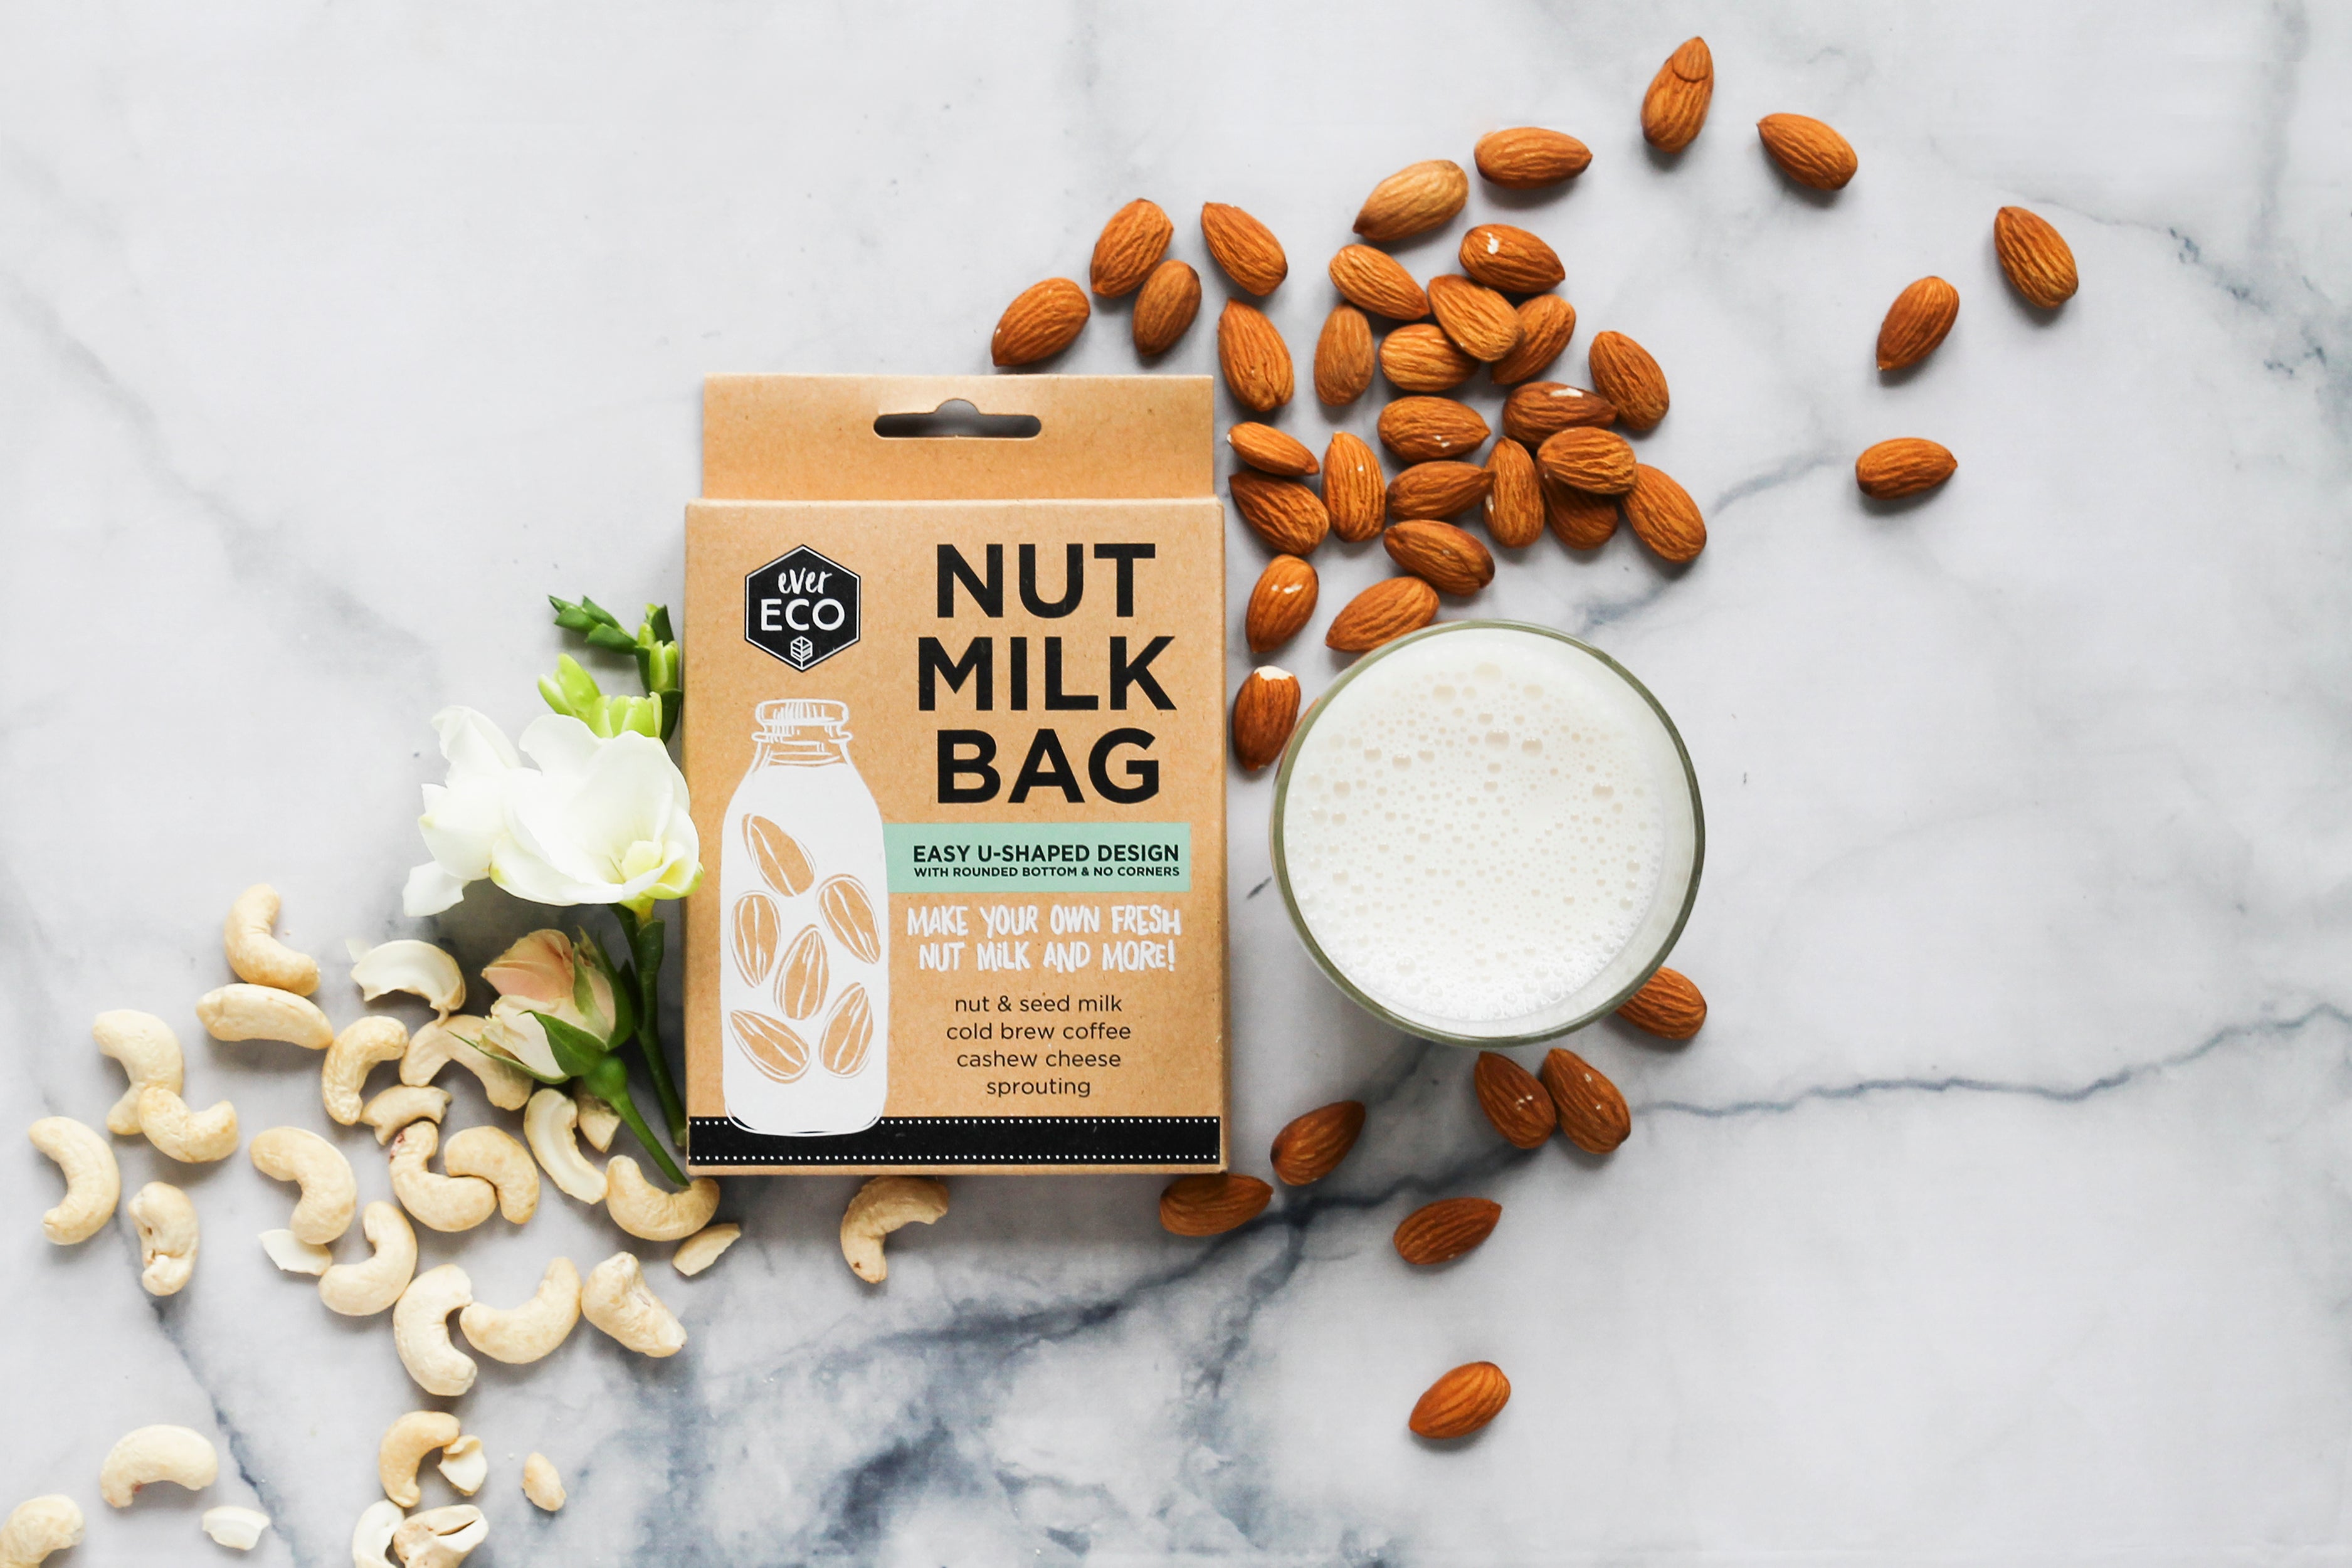 Ever Eco Nut Milk Bag